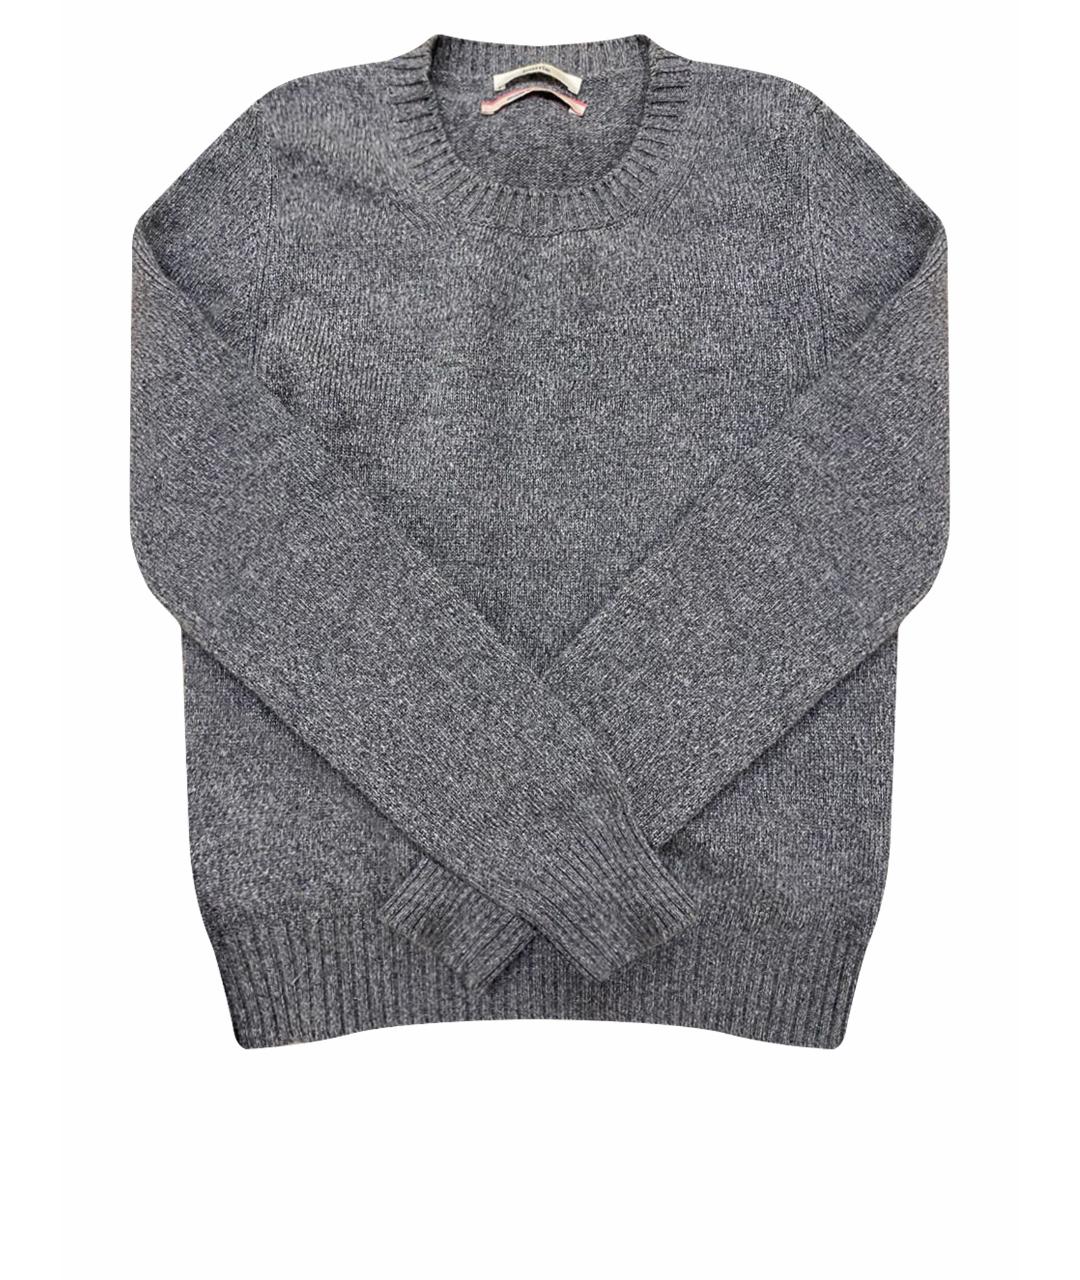 BARRIE Серый кашемировый джемпер / свитер, фото 1